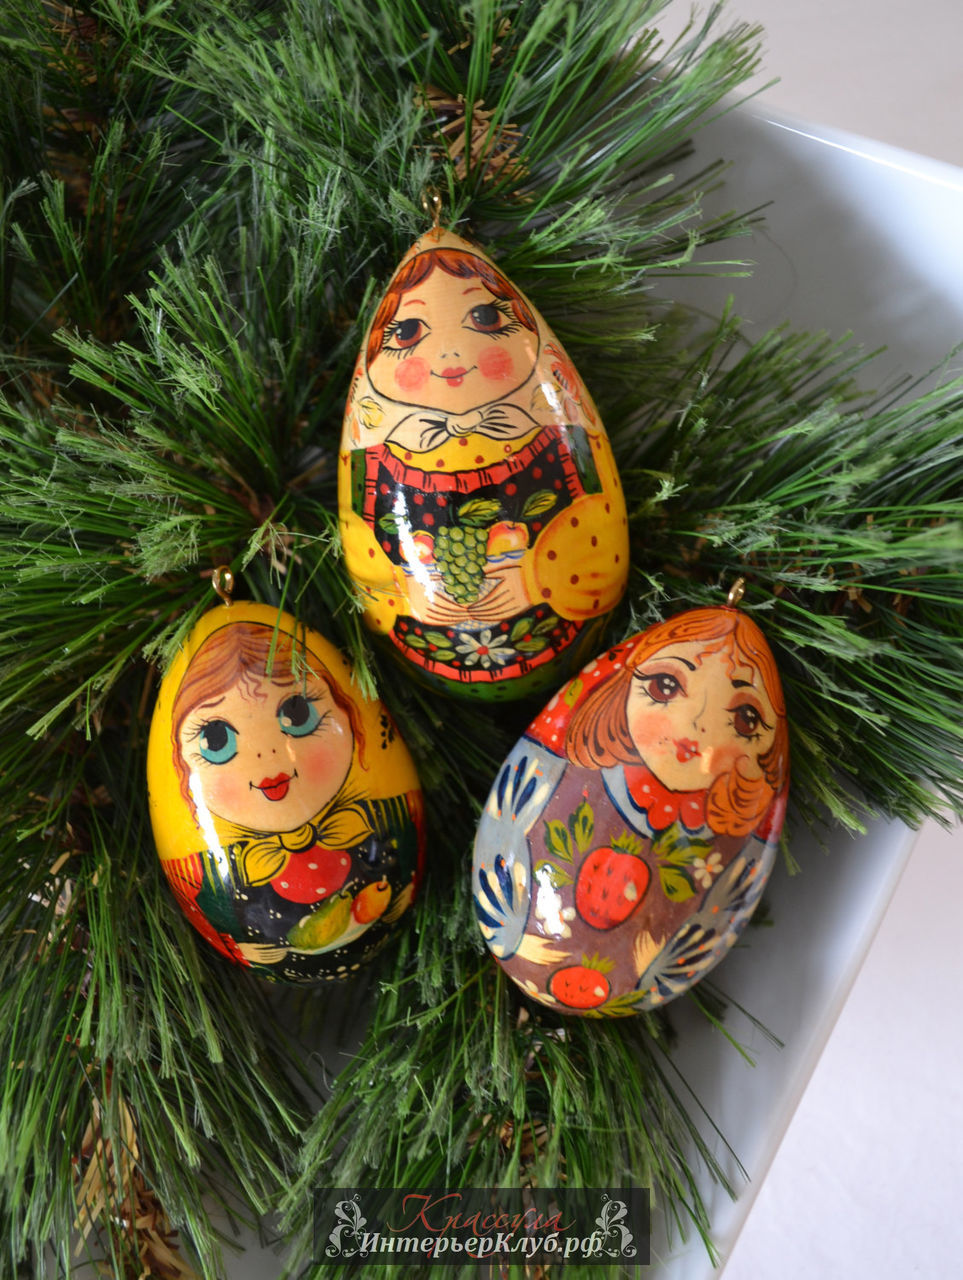 11 Украшение новогодней елки в русском стиле, елочные игрушки в русском стиле